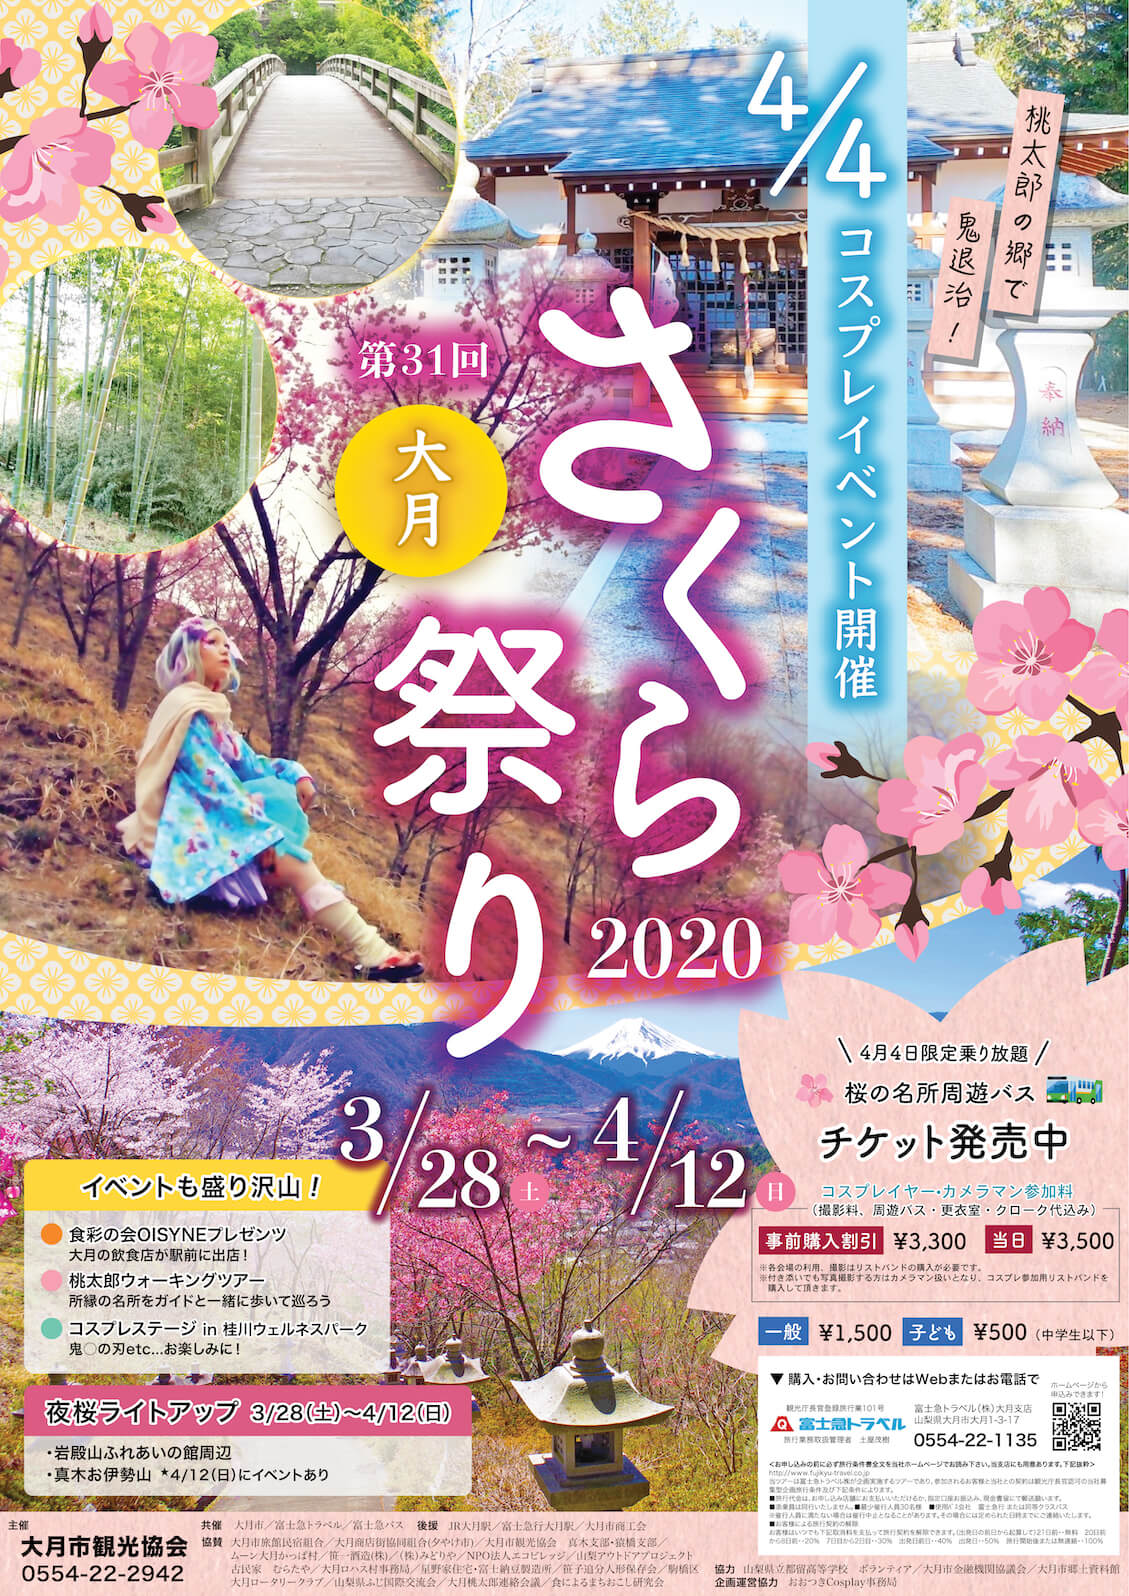 大月市観光協会 Otsuki Tourism Association - ホームページ